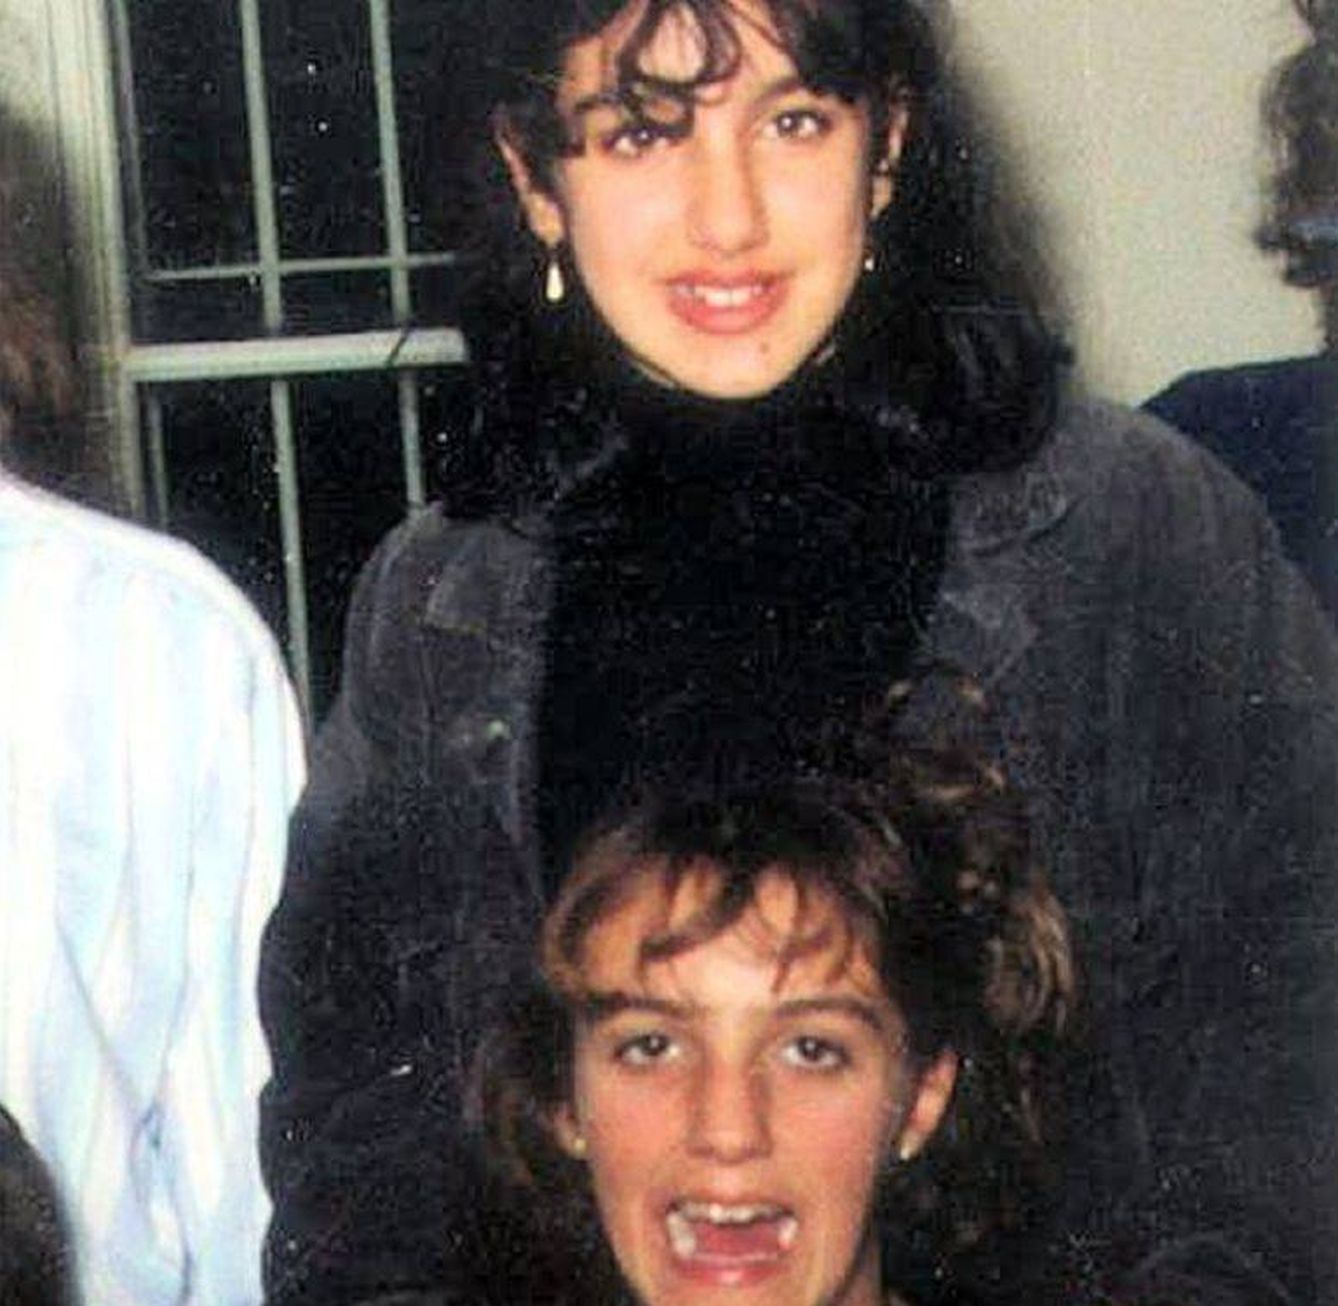 Manuela (arriba) y Virginia (abajo), en una fotografía difundida tras su desaparición.